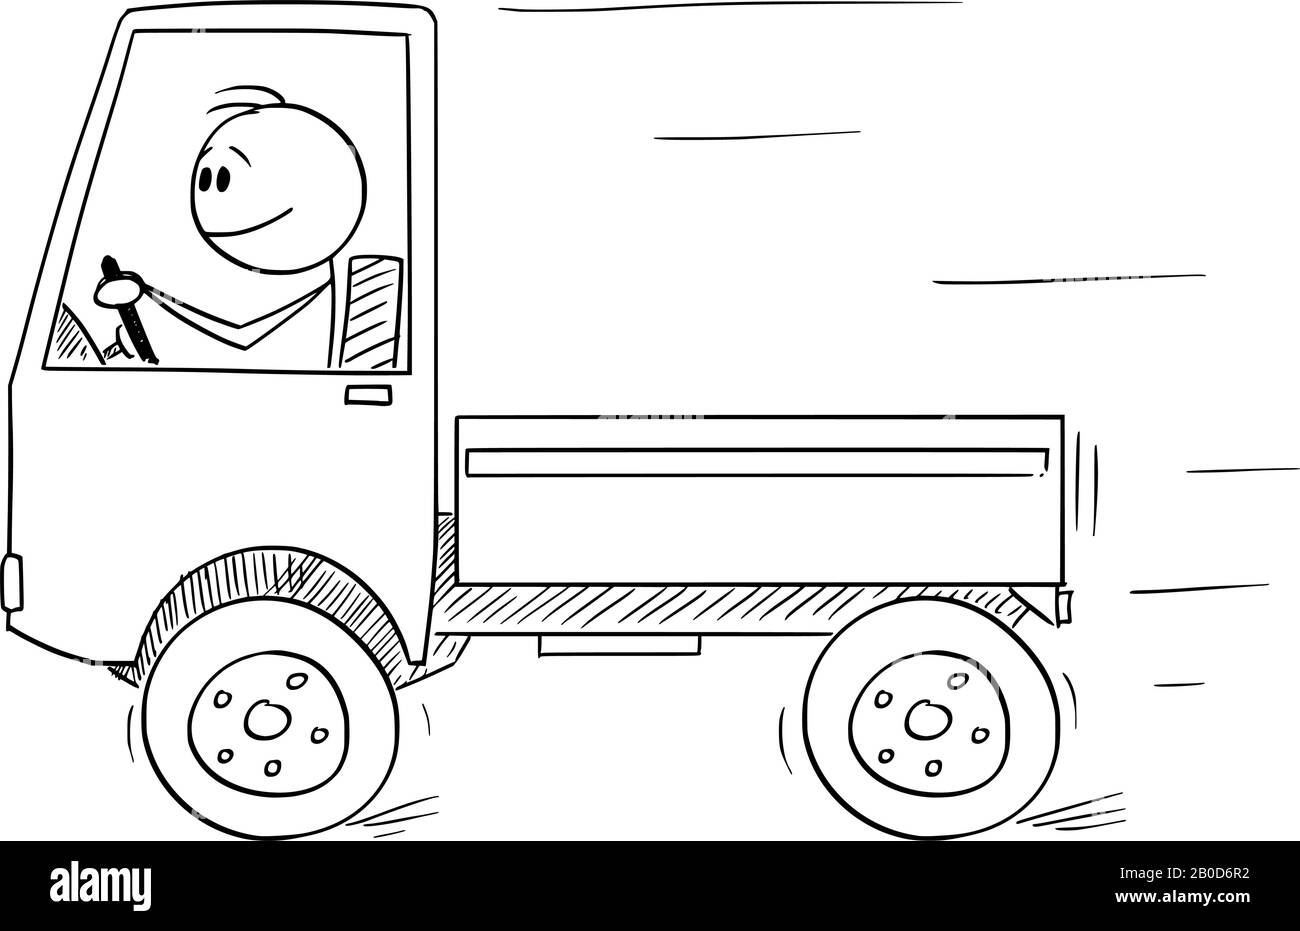 Figura del fumetto vettoriale che disegna l'illustrazione concettuale di uomo sorridente o conducente che guida un piccolo camion scaricato. Concetto di business nel settore dei trasporti o della logistica. Illustrazione Vettoriale